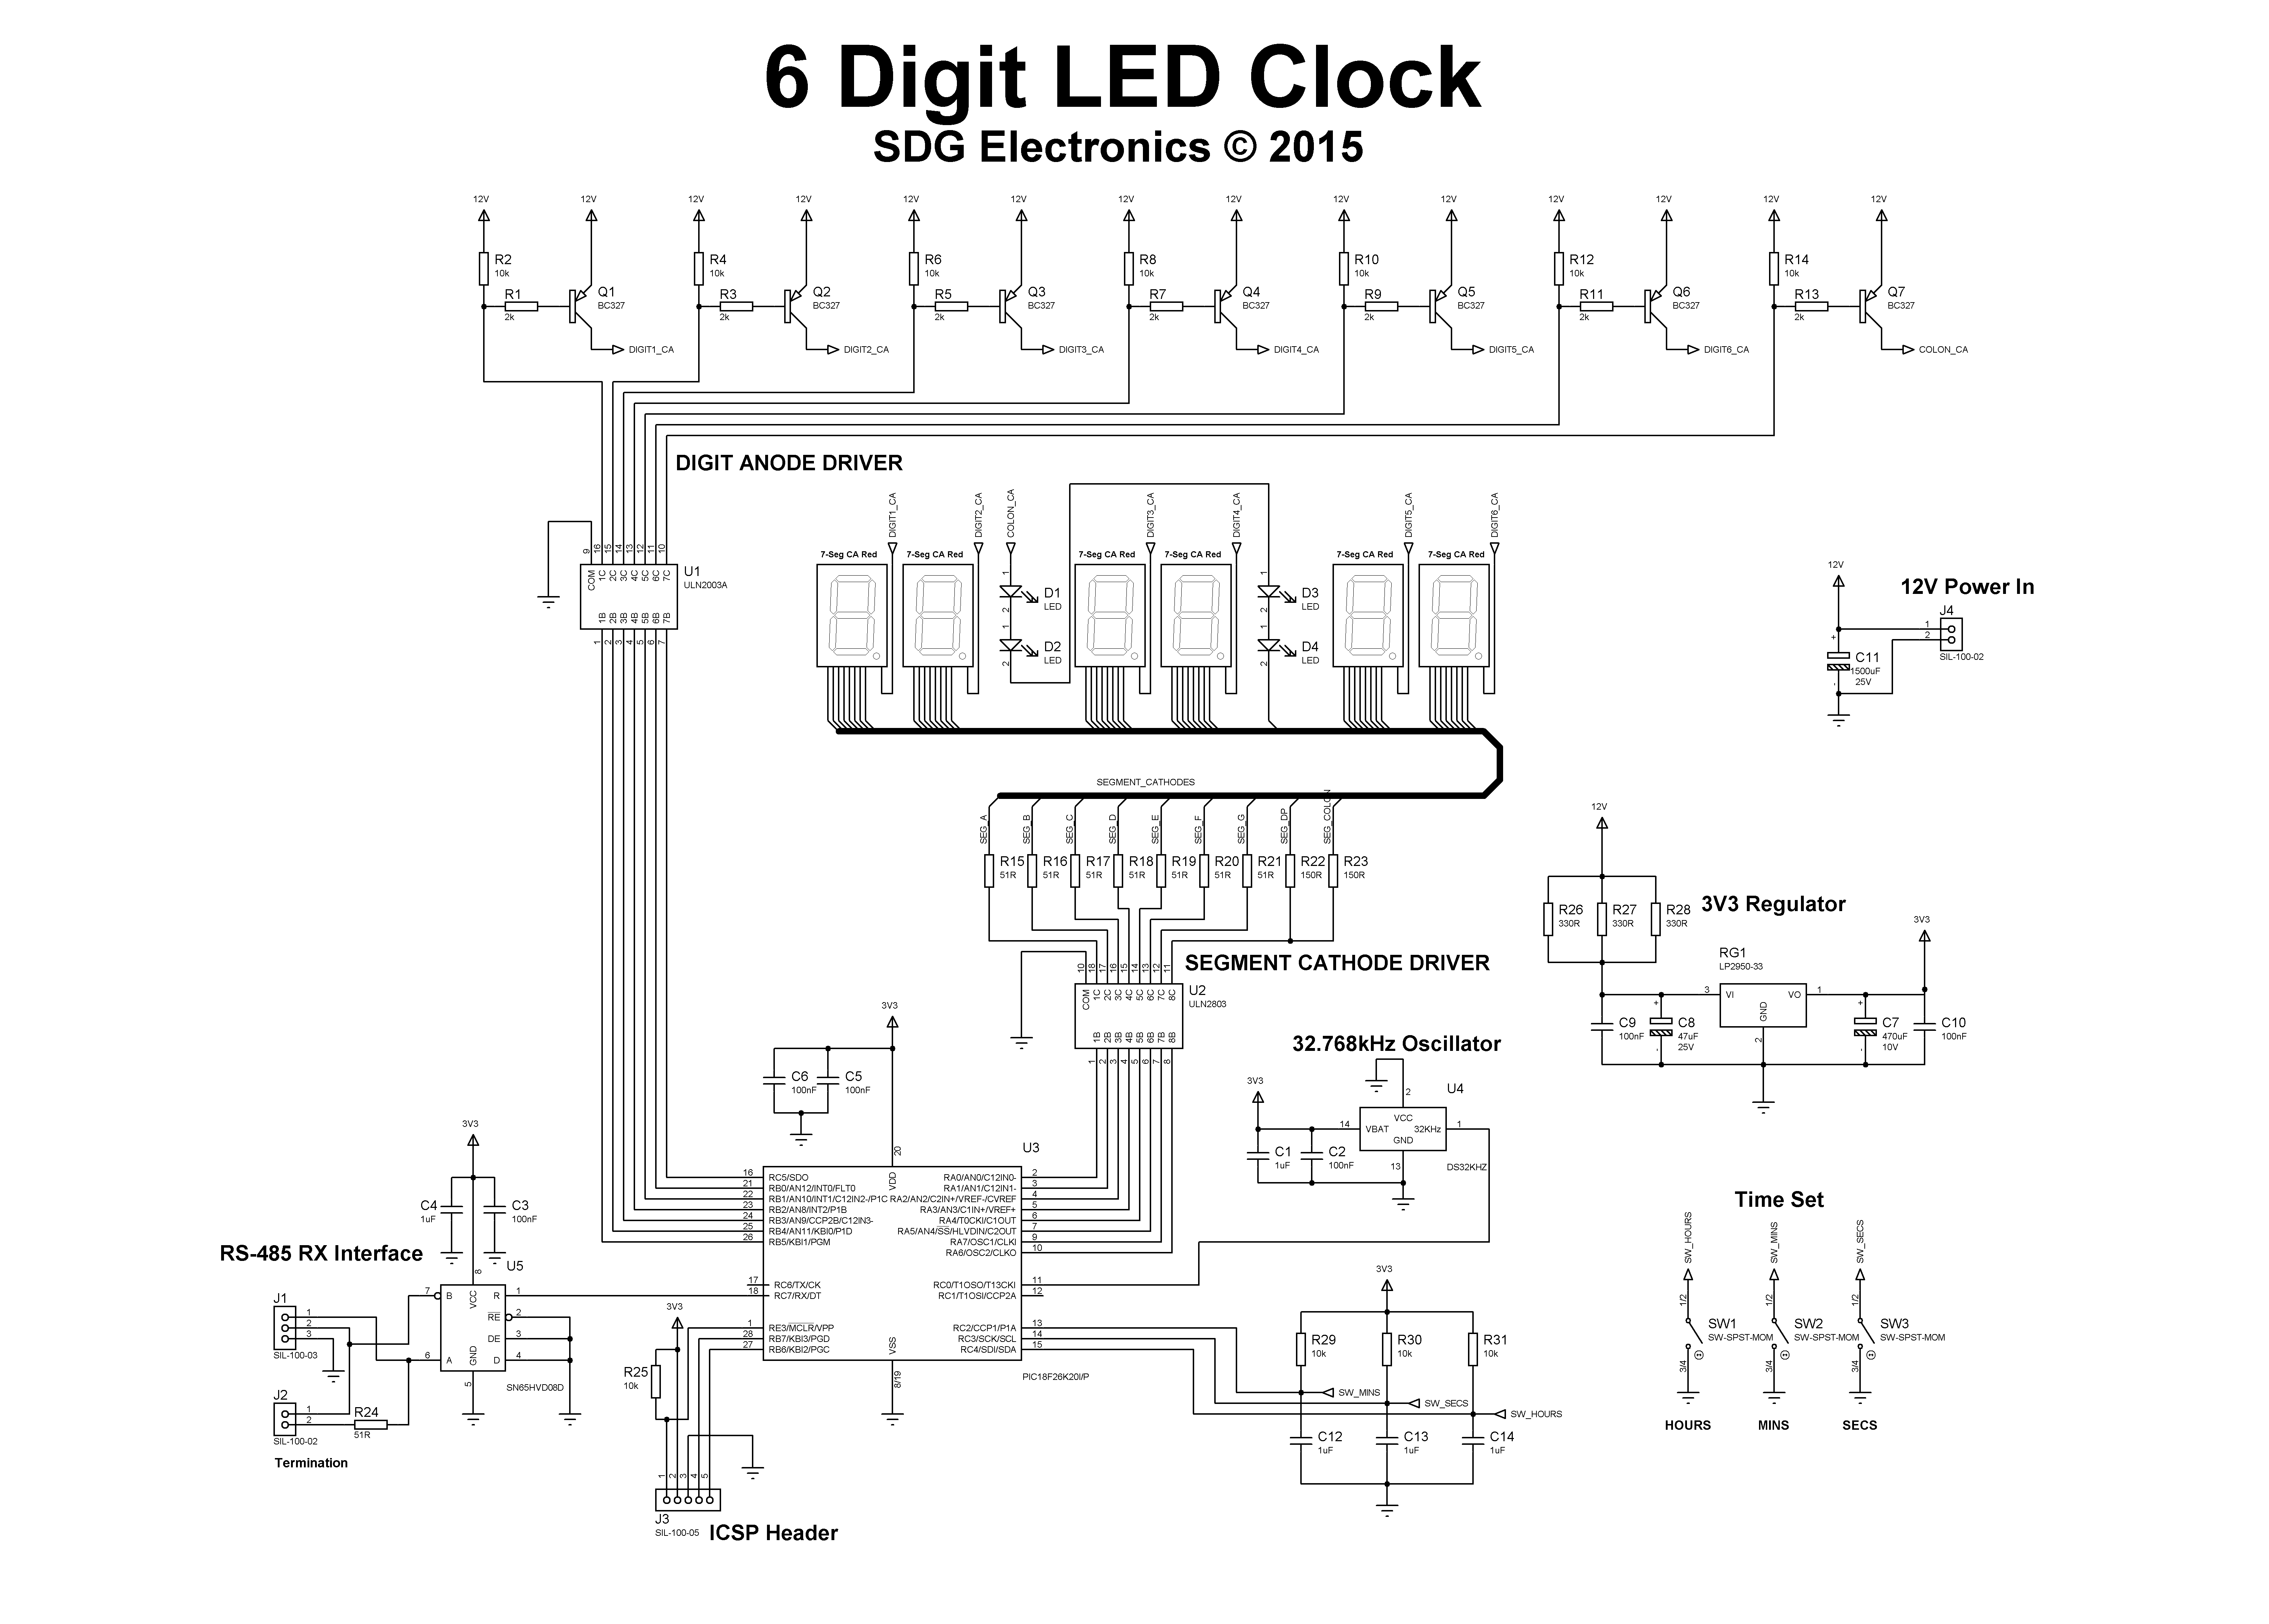 6 Digit LED Clock - SDG Electronics